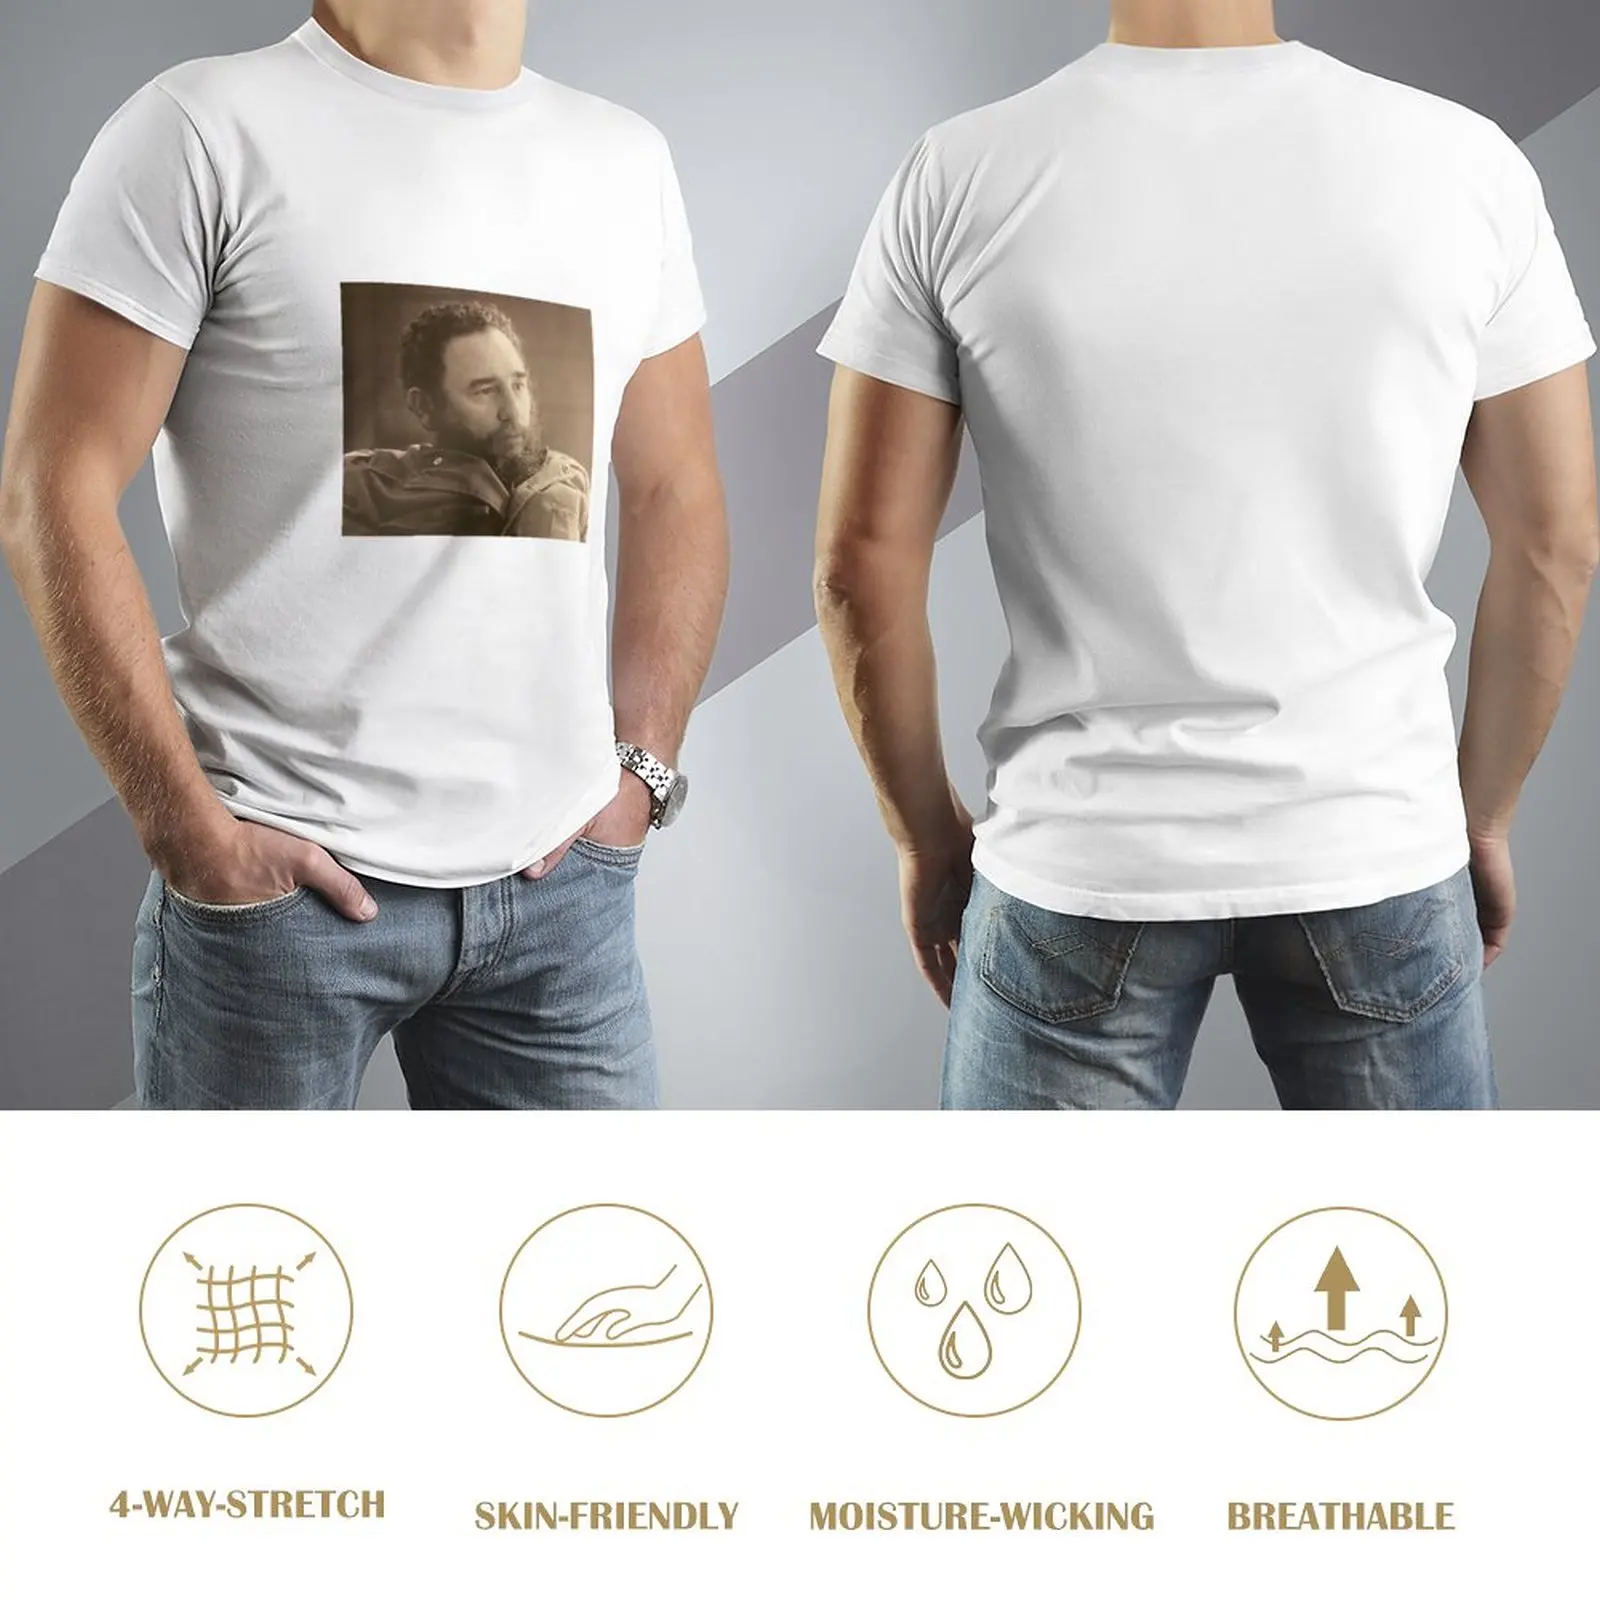 Футболка Fidel in Thought винтажная футболка плюс размер топы индивидуальные футболки мужские футболки повседневные стильные Изображение 2